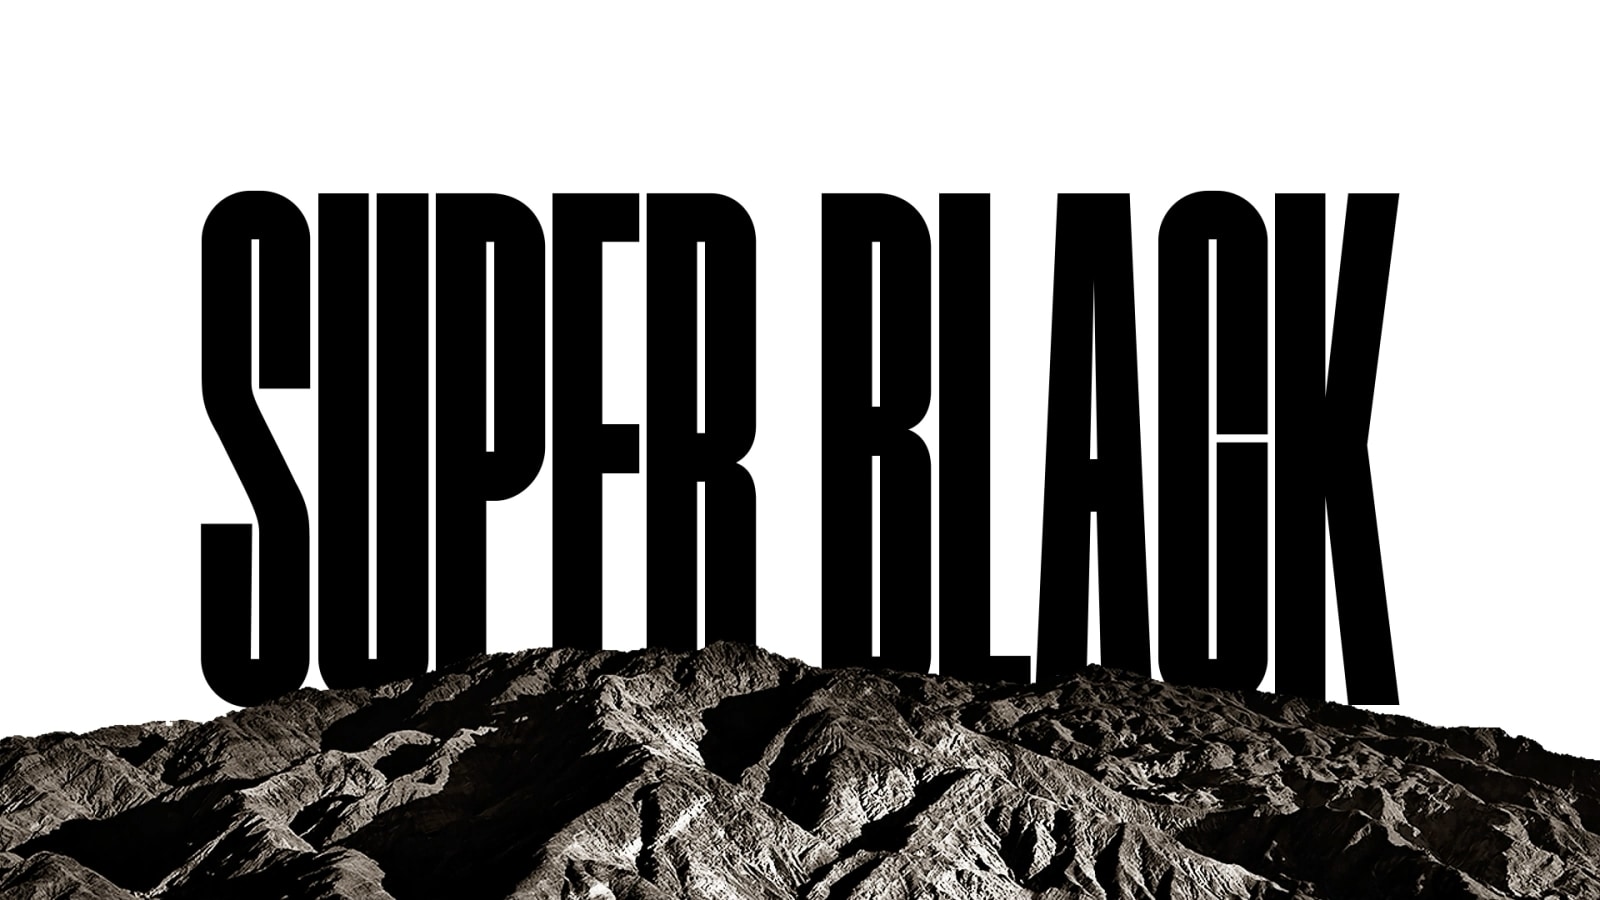 De woorden "SUPER BLACK" (superzwart) verschijnen in vetgedrukte zwarte hoofdletters. Een zwarte bergomgeving met scherpe definitie bedekt vervolgens de letters, en laat ook een dorp en zandduinen zien. De zwarte kopie verdwijnt achter een zwarte lucht.